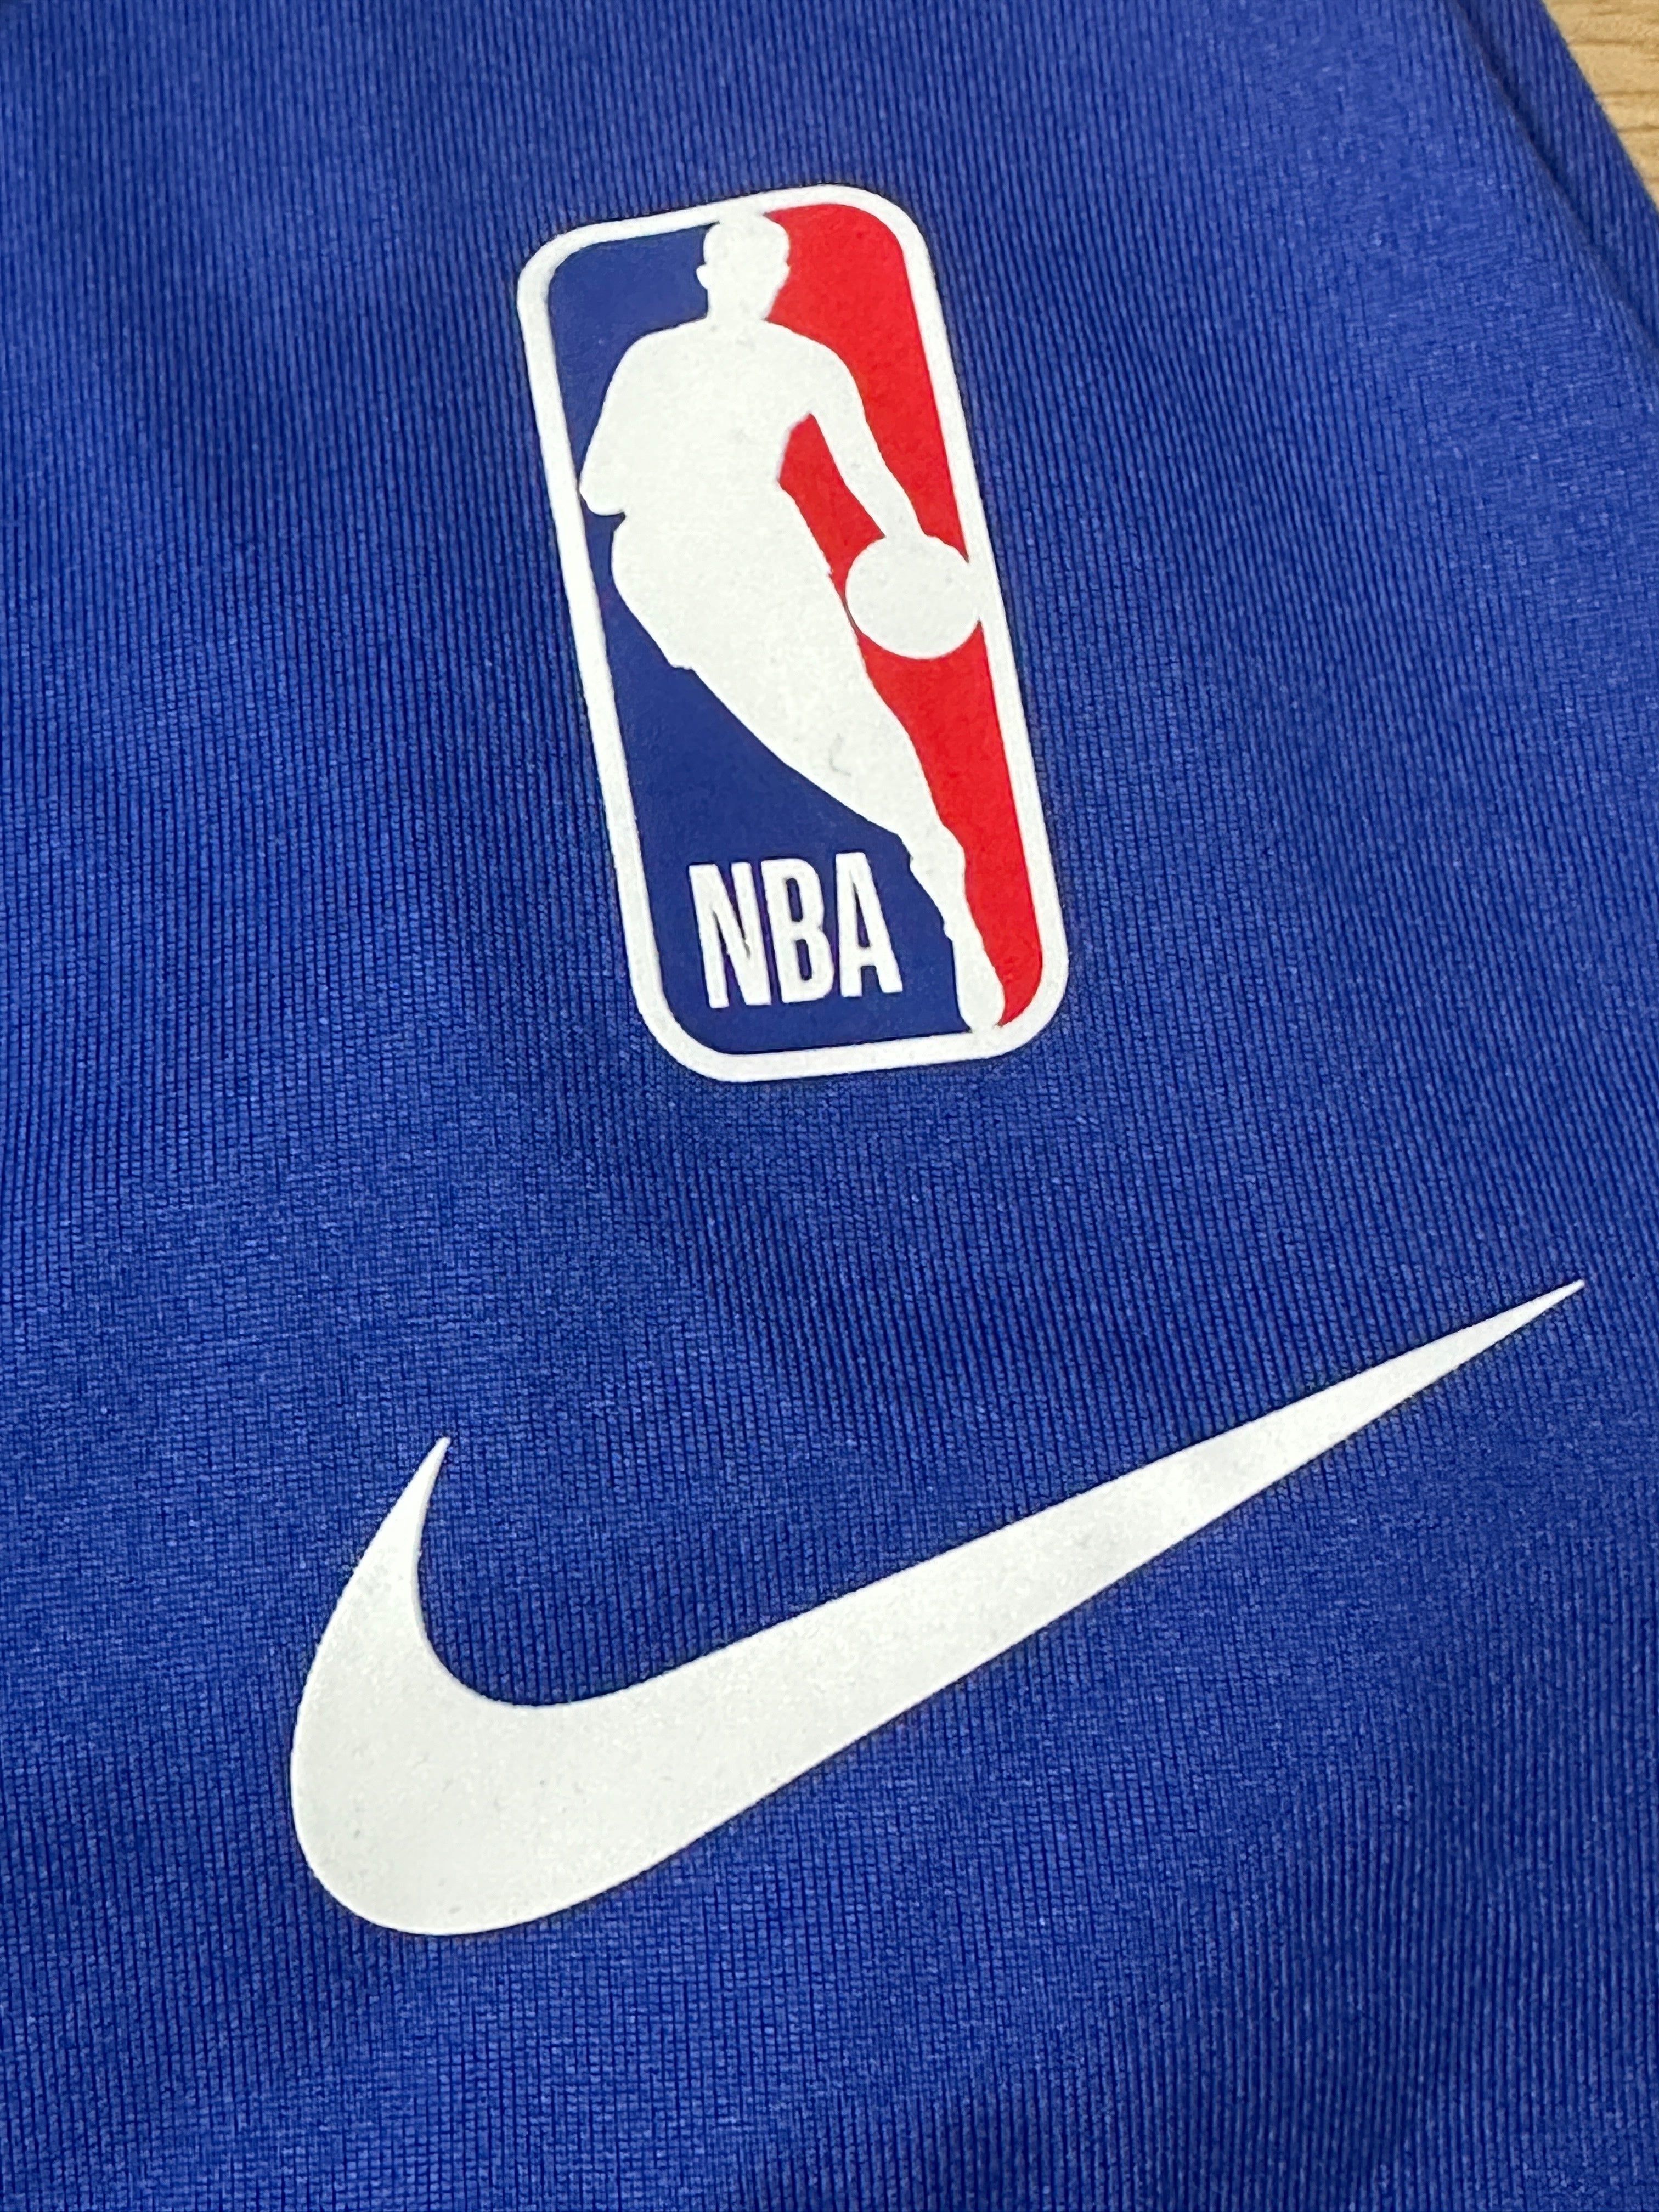 NBA22-23シーズンナイキフィラデルフィア76ersシクサーズシティワームアップtシャツ